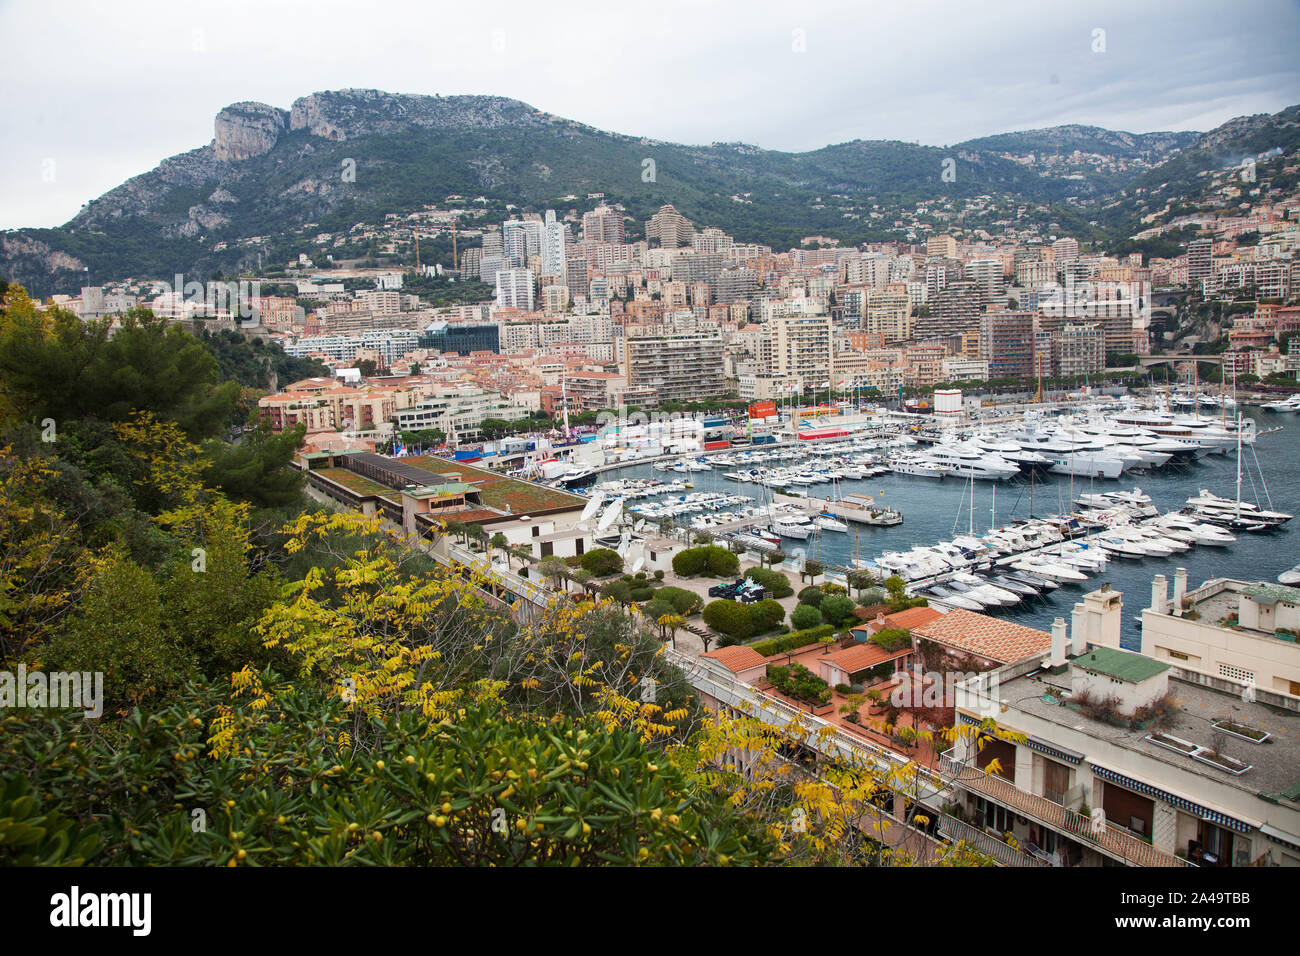 Monte Carlo dans la Principauté de Monaco. Jeppe Photo Gustafsson Banque D'Images